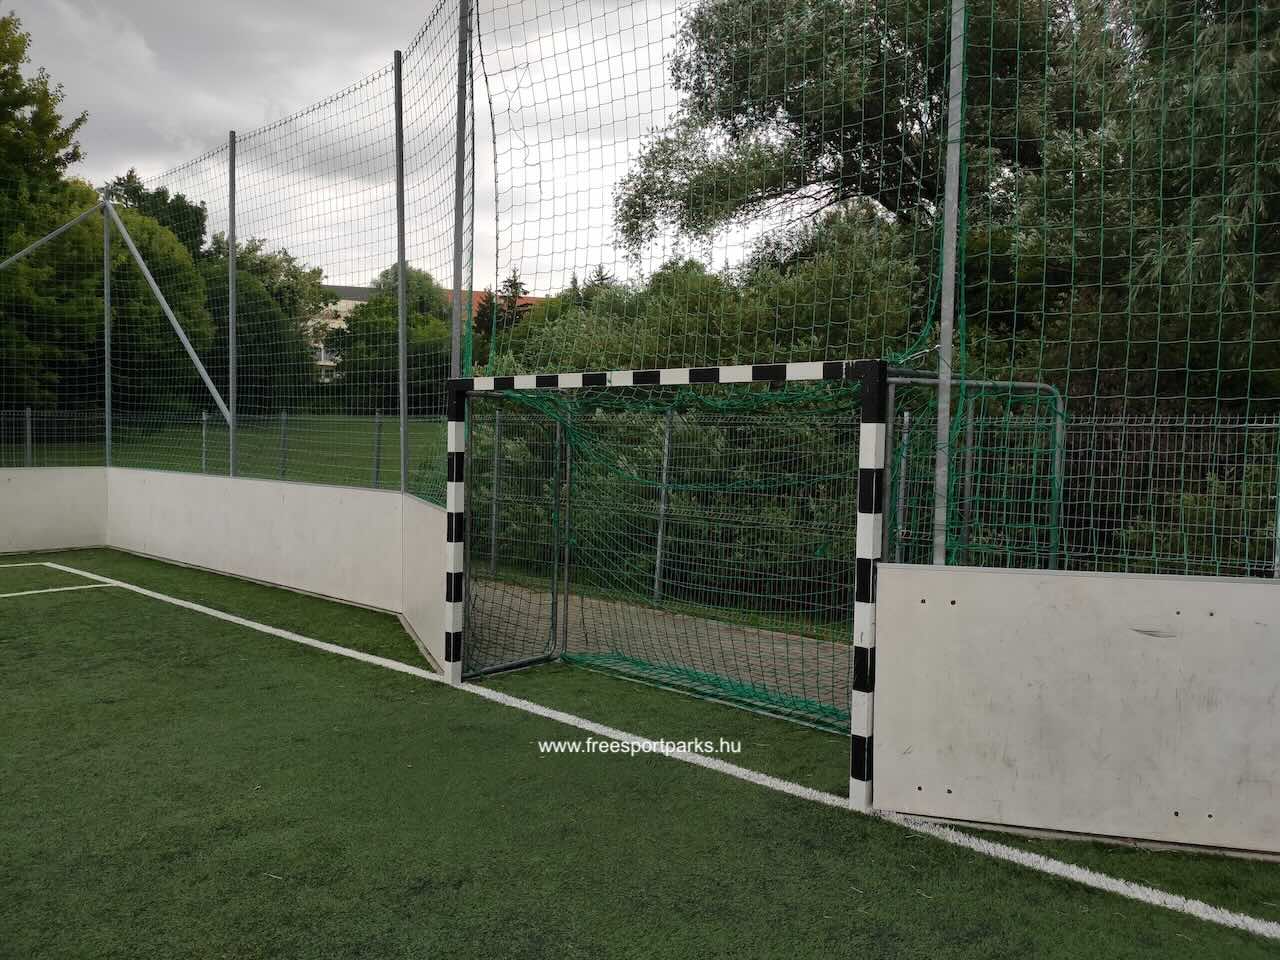 műfüves focipálya kapuja a Kaposvári Városligetben - Free Sport Parks Térkép